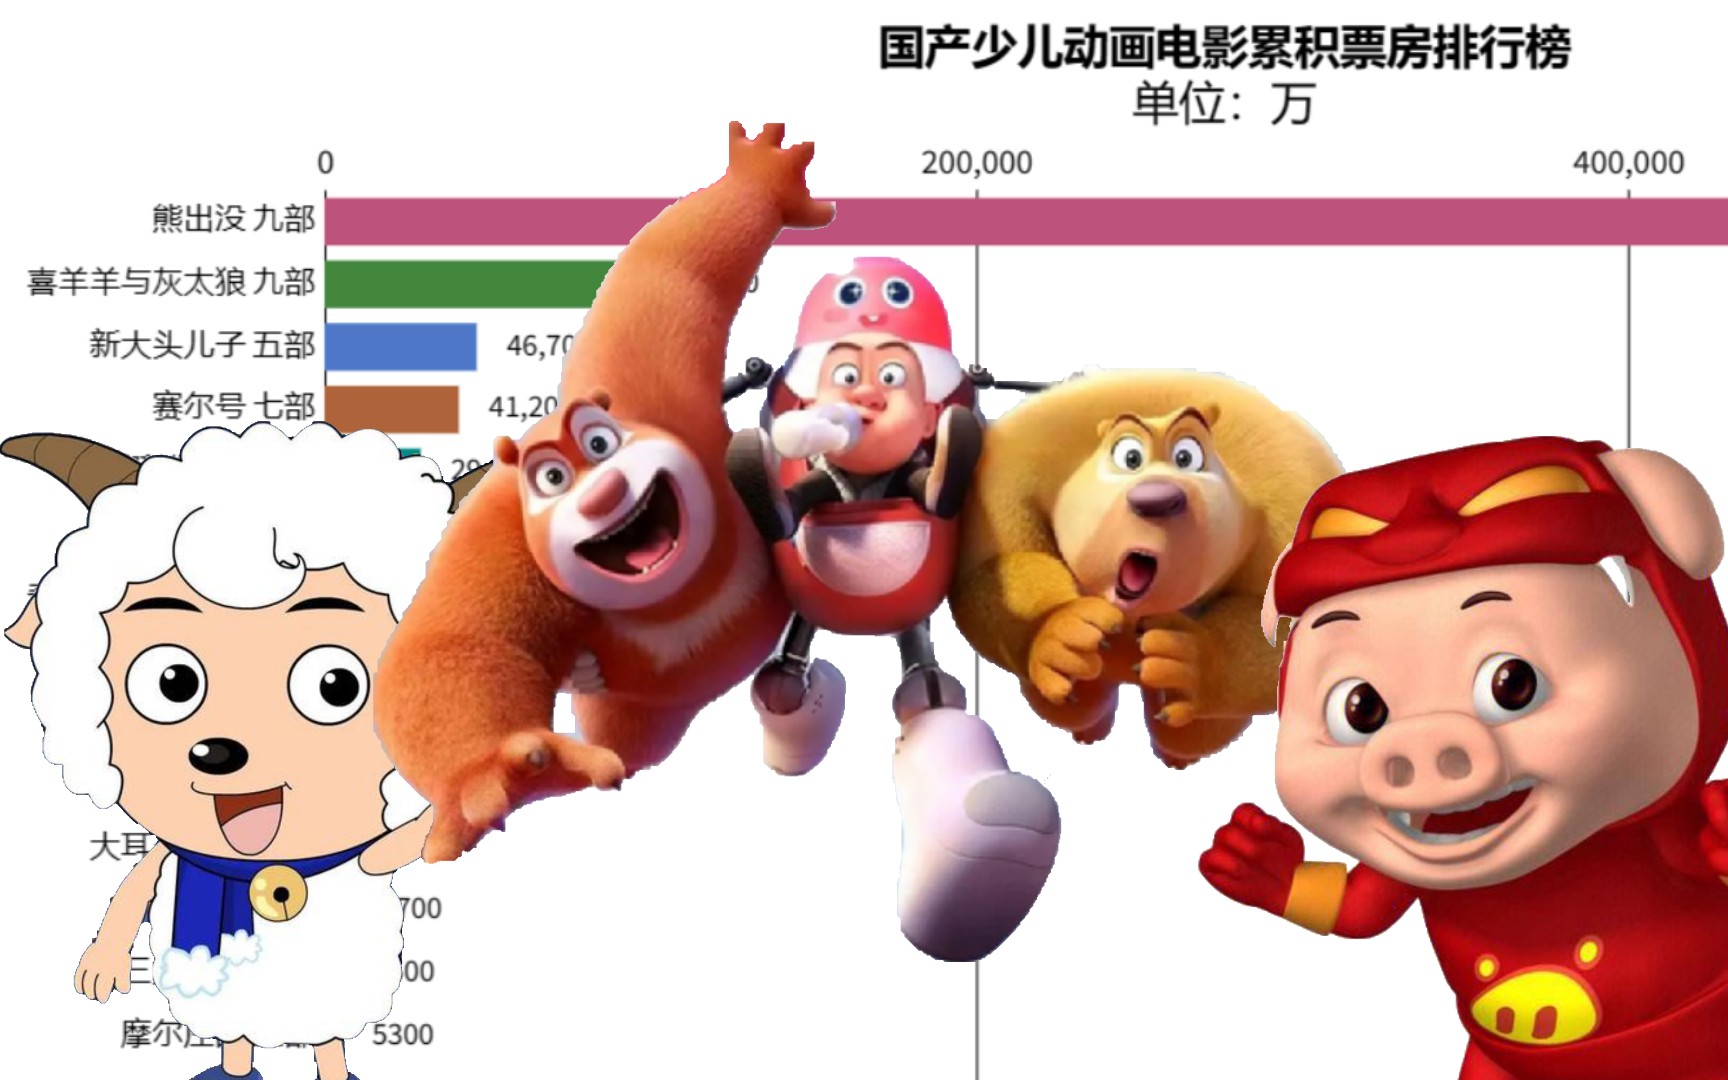 国产少儿动画电影累积票房排行榜 谁才是中国少儿动画电影的老大？【数据可视化】